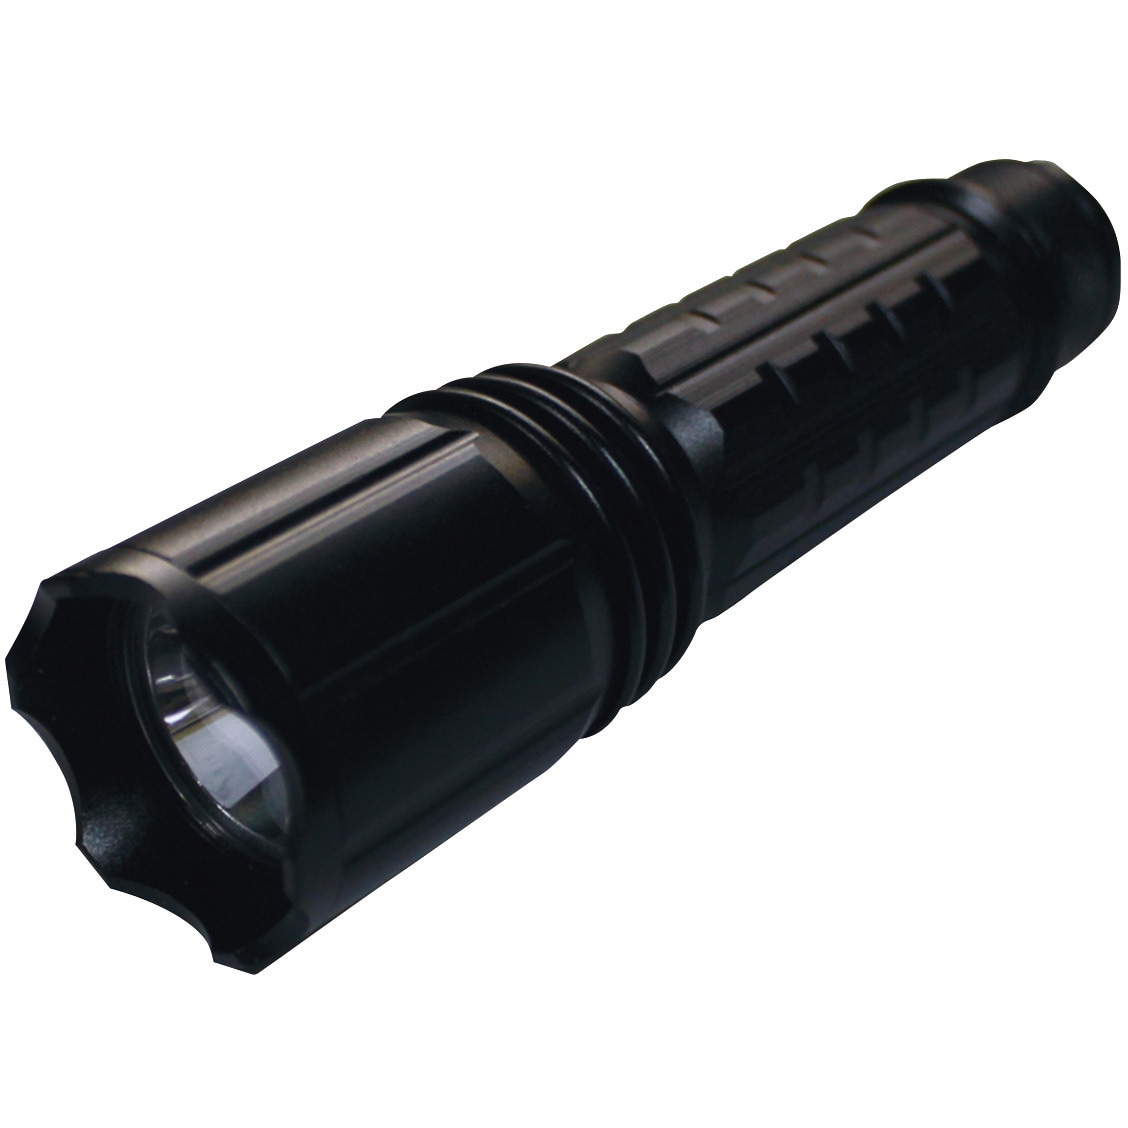 UV-SU405-01 Hydrangea ブラックライト 高出力(ノーマル照射) 乾電池タイプ 1個 Hydrangea  【通販サイトMonotaRO】